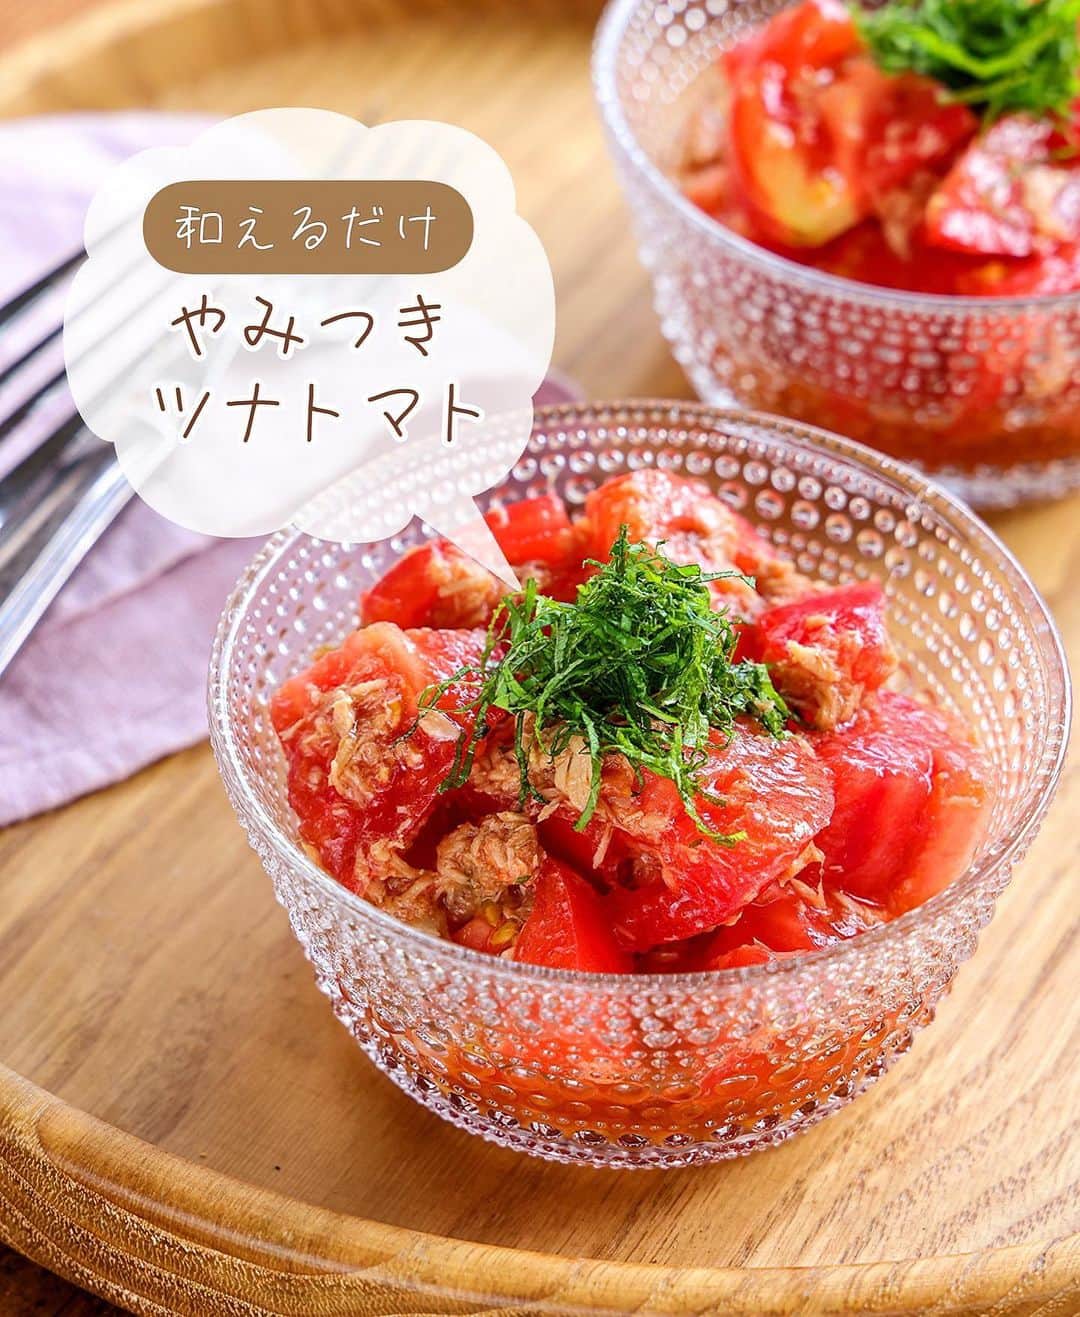 Mizuki【料理ブロガー・簡単レシピ】さんのインスタグラム写真 - (Mizuki【料理ブロガー・簡単レシピ】Instagram)「・一番好きなトマトの食べ方🍅 ⁡ ［#レシピ ］ ーーーーーーーーーーーーーーーー 和えるだけ！やみつきツナトマト ーーーーーーーーーーーーーーーー ⁡ ⁡ ⁡ ♔∴∵∴♔∴∵∴♔∴∵∴♔∴∵∴♔∴∵∴♔ おはようございます☺️ ⁡ 昨夜は#金スマ をご覧いただきまして ありがとうございました🙇‍♀️ 上手に編集していただいたおかげで 思ったよりは穏やかでした••• (怖い顔してましたけど😅笑) ⁡ ［黄金比率の衣］を使えば いろんな野菜の唐揚げができますので よかったらお試しくださいね💕 唐揚げにすると 野菜が苦手なお子さんも 食べやすくなりますよ〜😋🌸 ♔∴∵∴♔∴∵∴♔∴∵∴♔∴∵∴♔∴∵∴♔ ⁡ ⁡ ⁡ ⁡ ⁡ さて、今日は 先日リールでご紹介したレシピの 静止画バージョンです✨ ⁡ ▼ ▼ ▼ ▼ ▼ ▼ ⁡ 1番好きなトマトの食べ方 ''やみつきツナトマト'' ⁡ ボウル1つで和えるだけ💕 フレッシュトマトに ツナを合わせてボリュームアップ！！ さっぱりコクのある中華風の味付けで やみつきになるおいしさですよ〜🤭 ⁡ ハズレのトマトもおいしくなるので よかったらお試しくださいね🍅✨ ⁡ ⁡ ⁡ ⋱⋰ ⋱⋰ ⋱⋰ ⋱⋰ ⋱⋰ ⋱⋰ ⋱⋰ ☑︎簡単・時短・節約レシピ更新中 @mizuki_31cafe ⁡ ☑︎謎の暮らし＆変なライブ垢 @mizuki_kurashi ⋱⋰ ⋱⋰ ⋱⋰ ⋱⋰ ⋱⋰ ⋱⋰ ⋱⋰ ⁡ ⁡ ⁡ ＿＿＿＿＿＿＿＿＿＿＿＿＿＿＿＿＿＿＿ 【2〜3人分】 トマト...2個 ツナ...1缶(70g) ●醤油・酢...各小2 ●砂糖・ごま油...各小1 大葉(千切り)...適量 ⁡ 1.トマトは一口大に切る。ツナは油を切る。 2.ボウルに●と1を入れて和え、器に盛って大葉をのせる。 ￣￣￣￣￣￣￣￣￣￣￣￣￣￣￣￣￣￣￣ ⁡ ⁡ 《ポイント》 ♦︎水煮のツナを使用する場合はごま油を少し増やすと◎ ♦︎大葉は一緒に和えてもOK！ ⁡ ⁡ ⁡ ⁡ ⁡ ⁡ ⋱⋰ ⋱⋰ ⋱⋰ ⋱⋰ ⋱⋰ ⋱⋰ ⋱⋰  愛用している調理器具・器など   #楽天ROOMに載せてます ‎𐩢𐩺  (ハイライトから飛べます🕊️) ⋱⋰ ⋱⋰ ⋱⋰ ⋱⋰ ⋱⋰ ⋱⋰ ⋱⋰ ⁡ ⁡ ⁡ ⁡ ⁡ ✼••┈┈┈┈┈••✼••┈┈┈┈┈••✼ 今日のごはんこれに決まり！ ‎𓊆#Mizukiのレシピノート 500品𓊇 ✼••┈┈┈┈┈••✼••┈┈┈┈┈••✼ ⁡ ˗ˏˋ おかげさまで25万部突破 ˎˊ˗ 料理レシピ本大賞準大賞を受賞しました✨ ⁡ 6000点の中からレシピを厳選し まさかの【500レシピ掲載】 肉や魚のメインおかずはもちろん 副菜、丼、麺、スープ、お菓子 ハレの日のレシピ、鍋のレシピまで 全てこの一冊で完結 𓌉◯𓇋 (全国の書店・ネット書店で発売中) ⁡ ⁡ ⁡ ⁡ ⁡ #やみつきツナトマトm #トマト #トマトレシピ #ツナ #副菜 #副菜レシピ #中華サラダ #マリネ #夏野菜 #夏野菜レシピ #節約料理 #簡単料理  #時短料理 #料理 #mizukiレシピ  #アルモンデ #時短レシピ #節約レシピ #簡単レシピ」6月17日 7時13分 - mizuki_31cafe